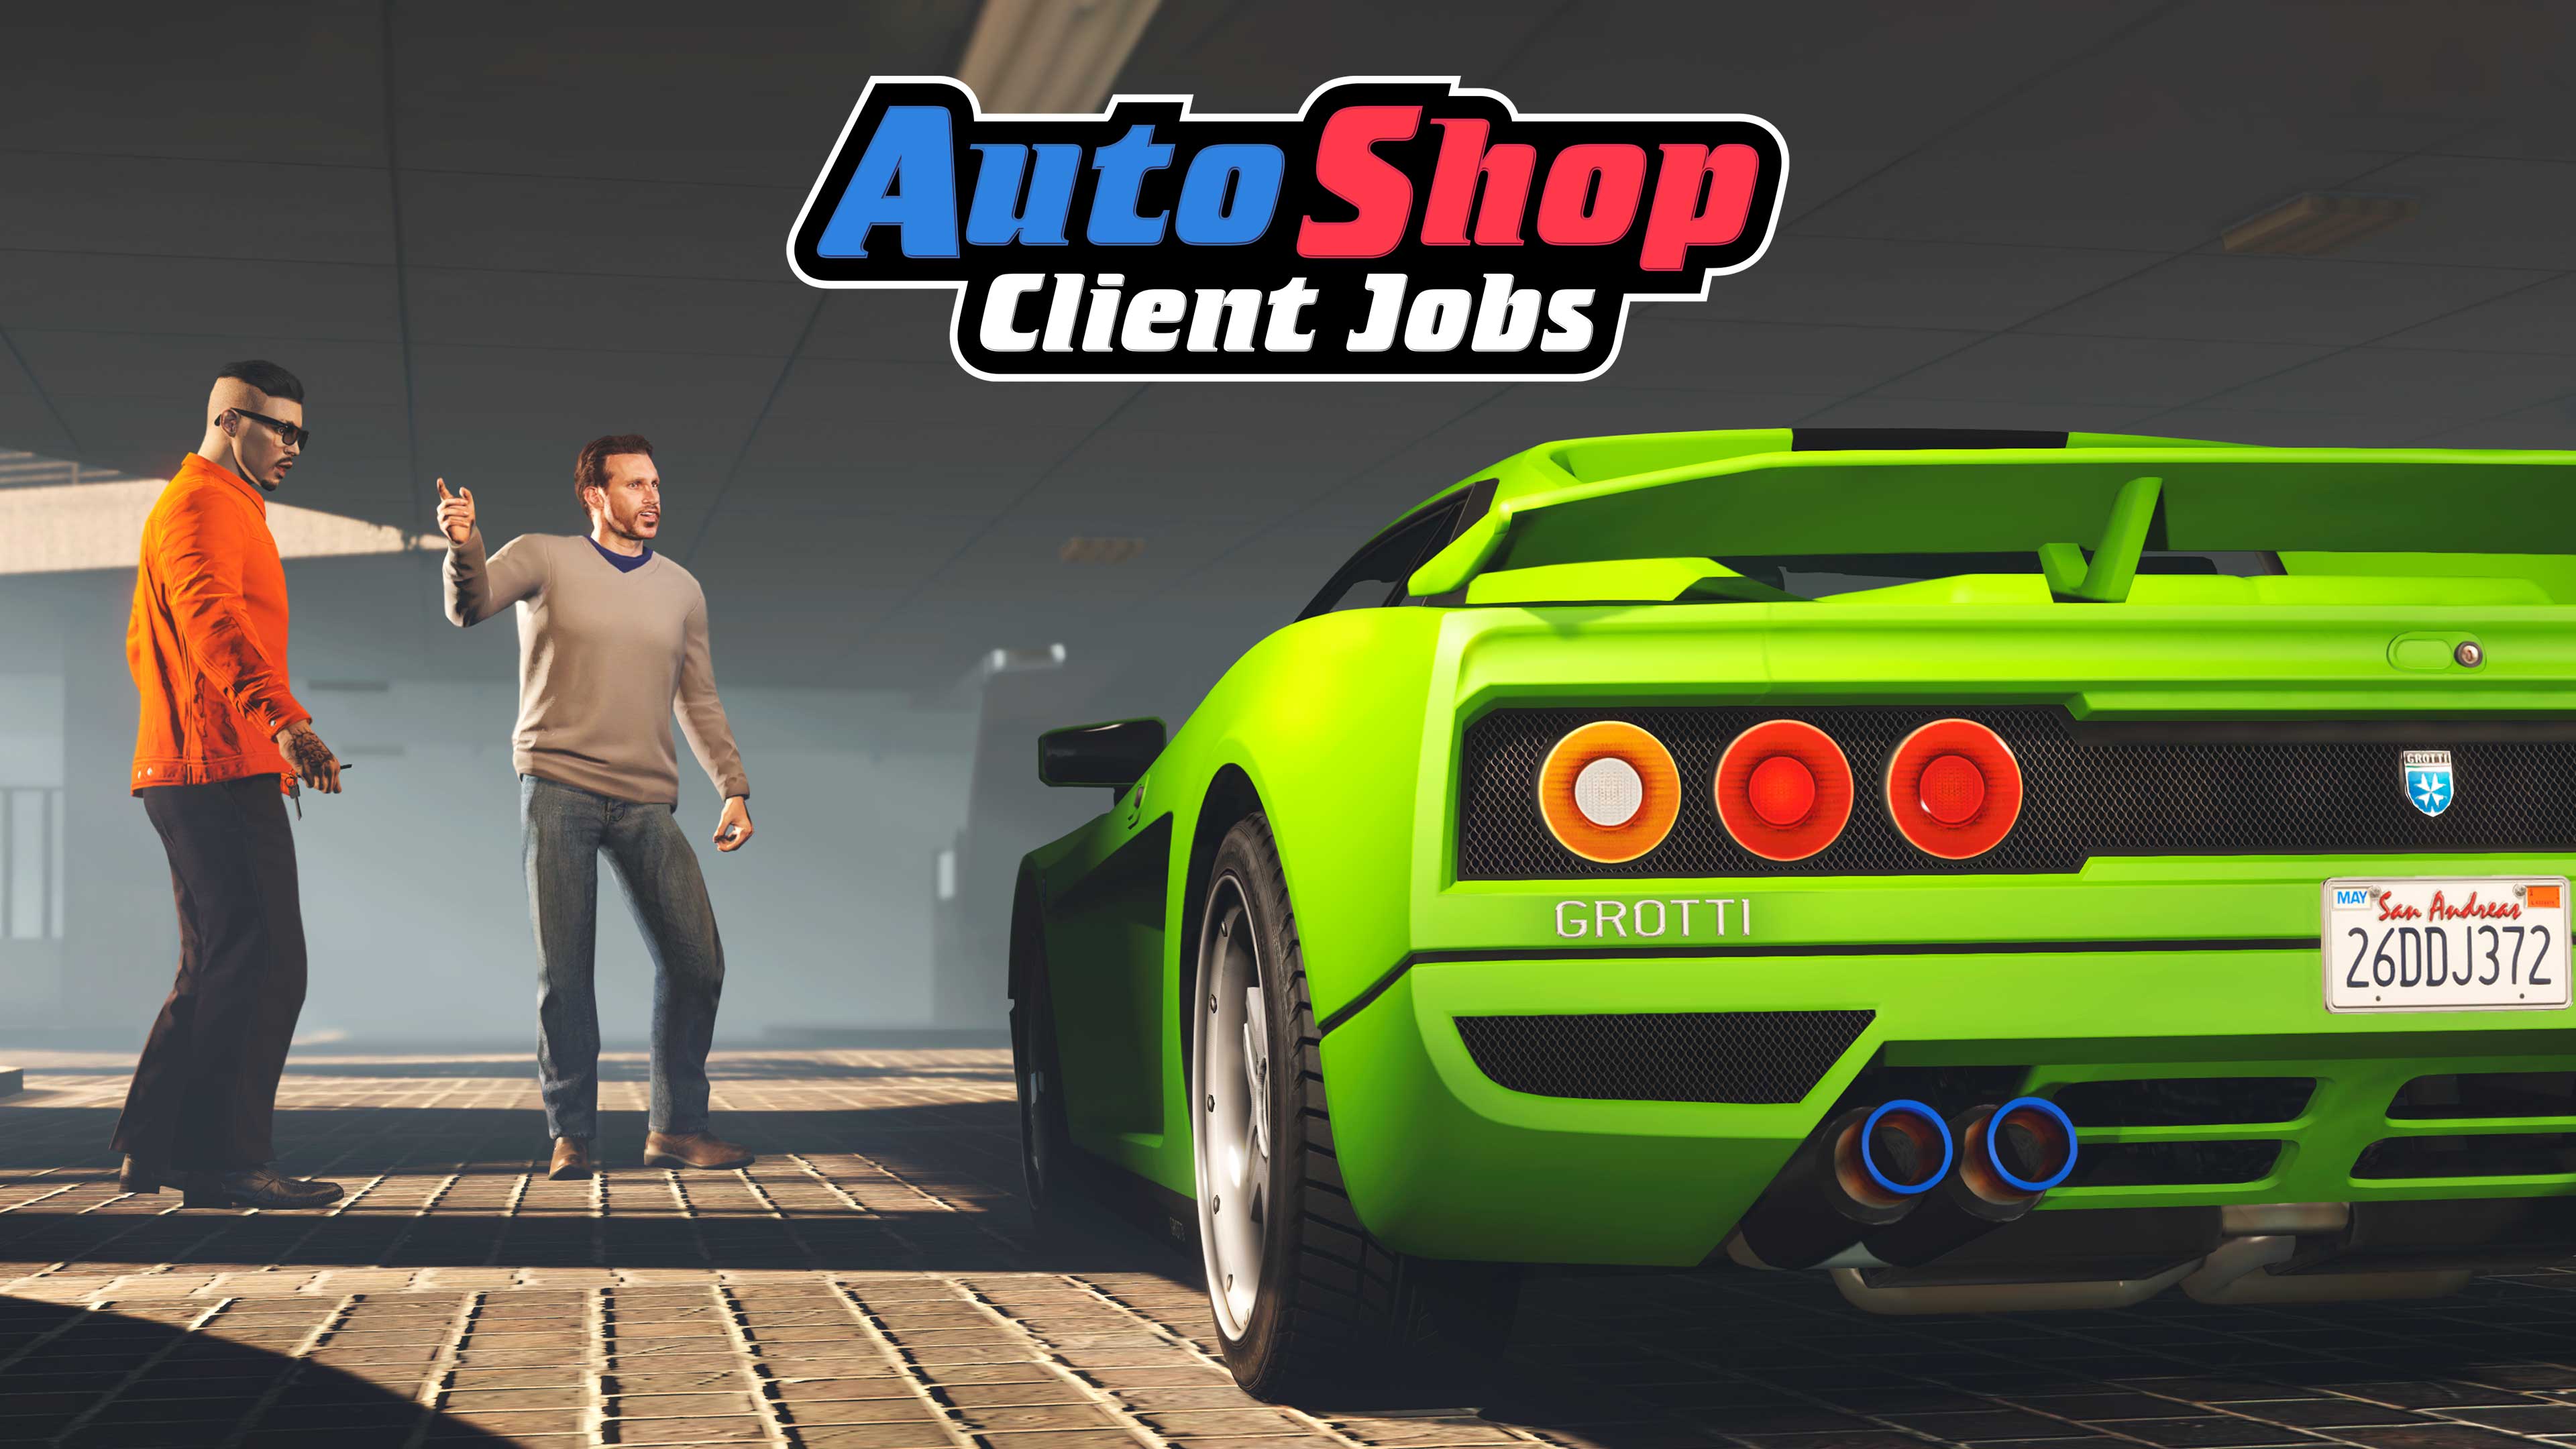 GTA Online Auto Shop Client Jobs